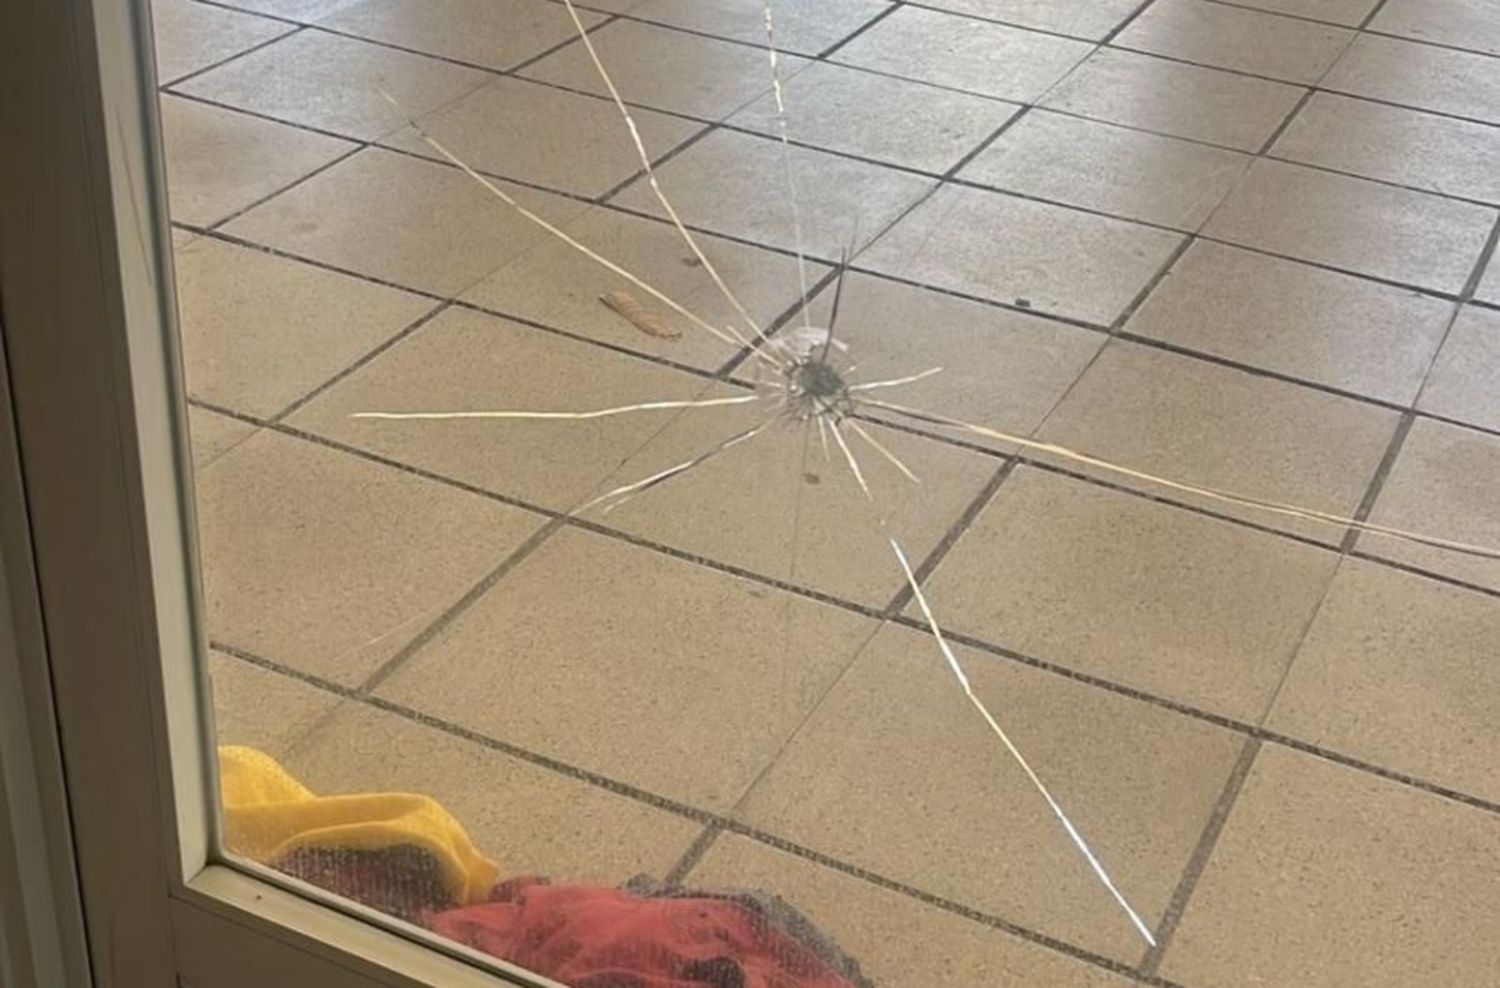 Mujer en situación de calle dañó la vidriera de un hotel porque la echaron de su lugar habitual